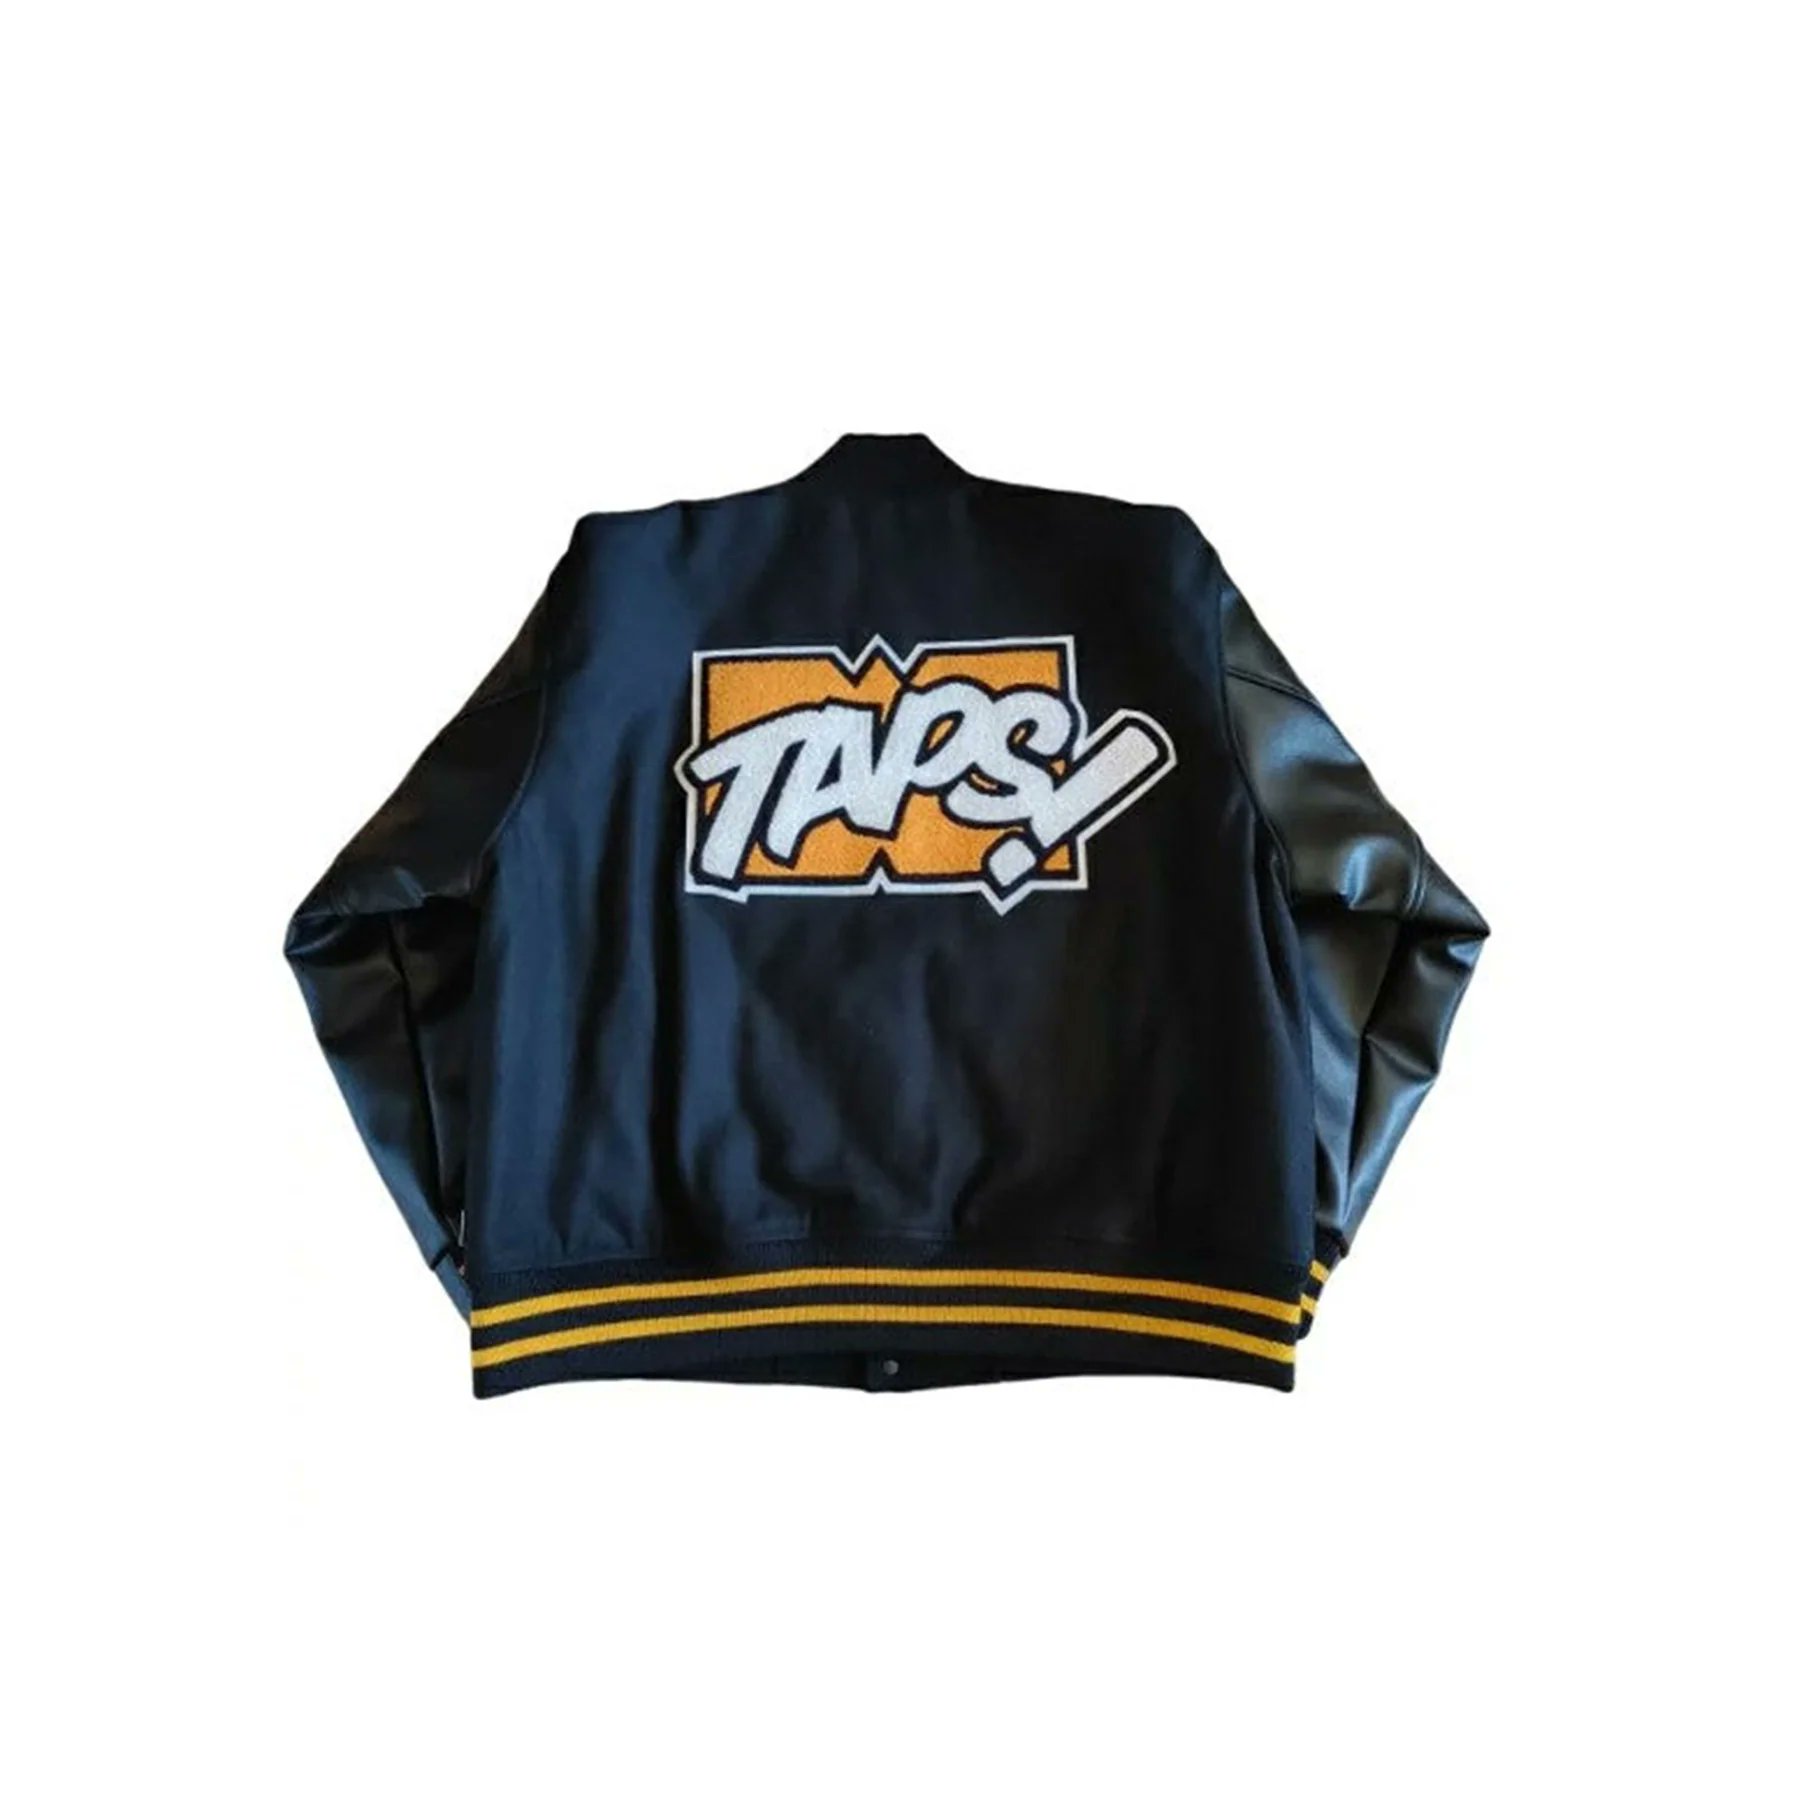 WTAPS New Year's Limited Varsity Jacket www.krzysztofbialy.com